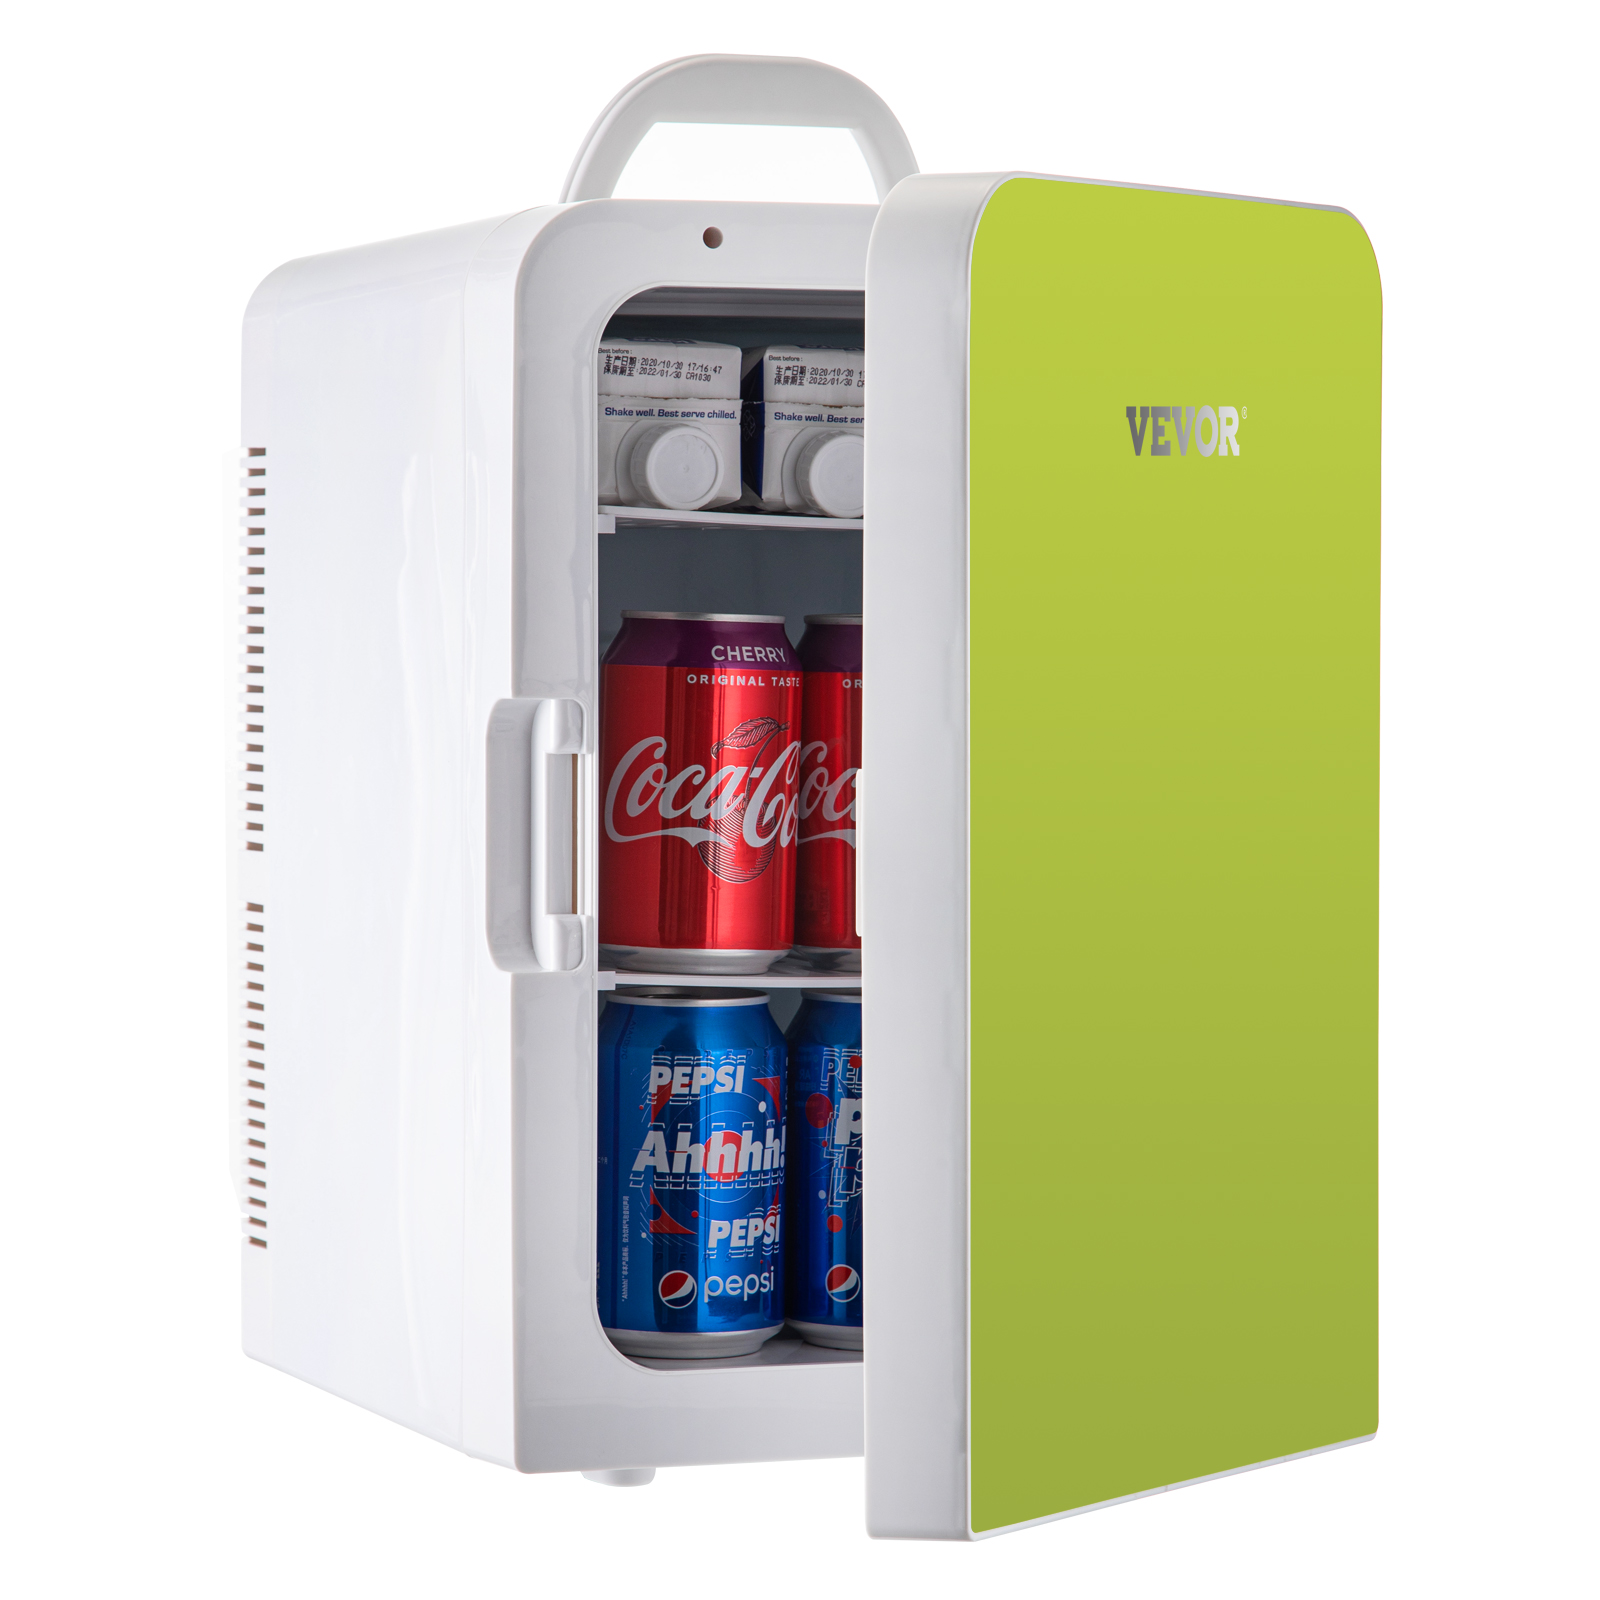 Mini refrigerador de 3.2 pies cúbicos con congelador para dormitorio,  dormitorio, oficina, refrigerador compacto con termostato ajustable,  estantes de